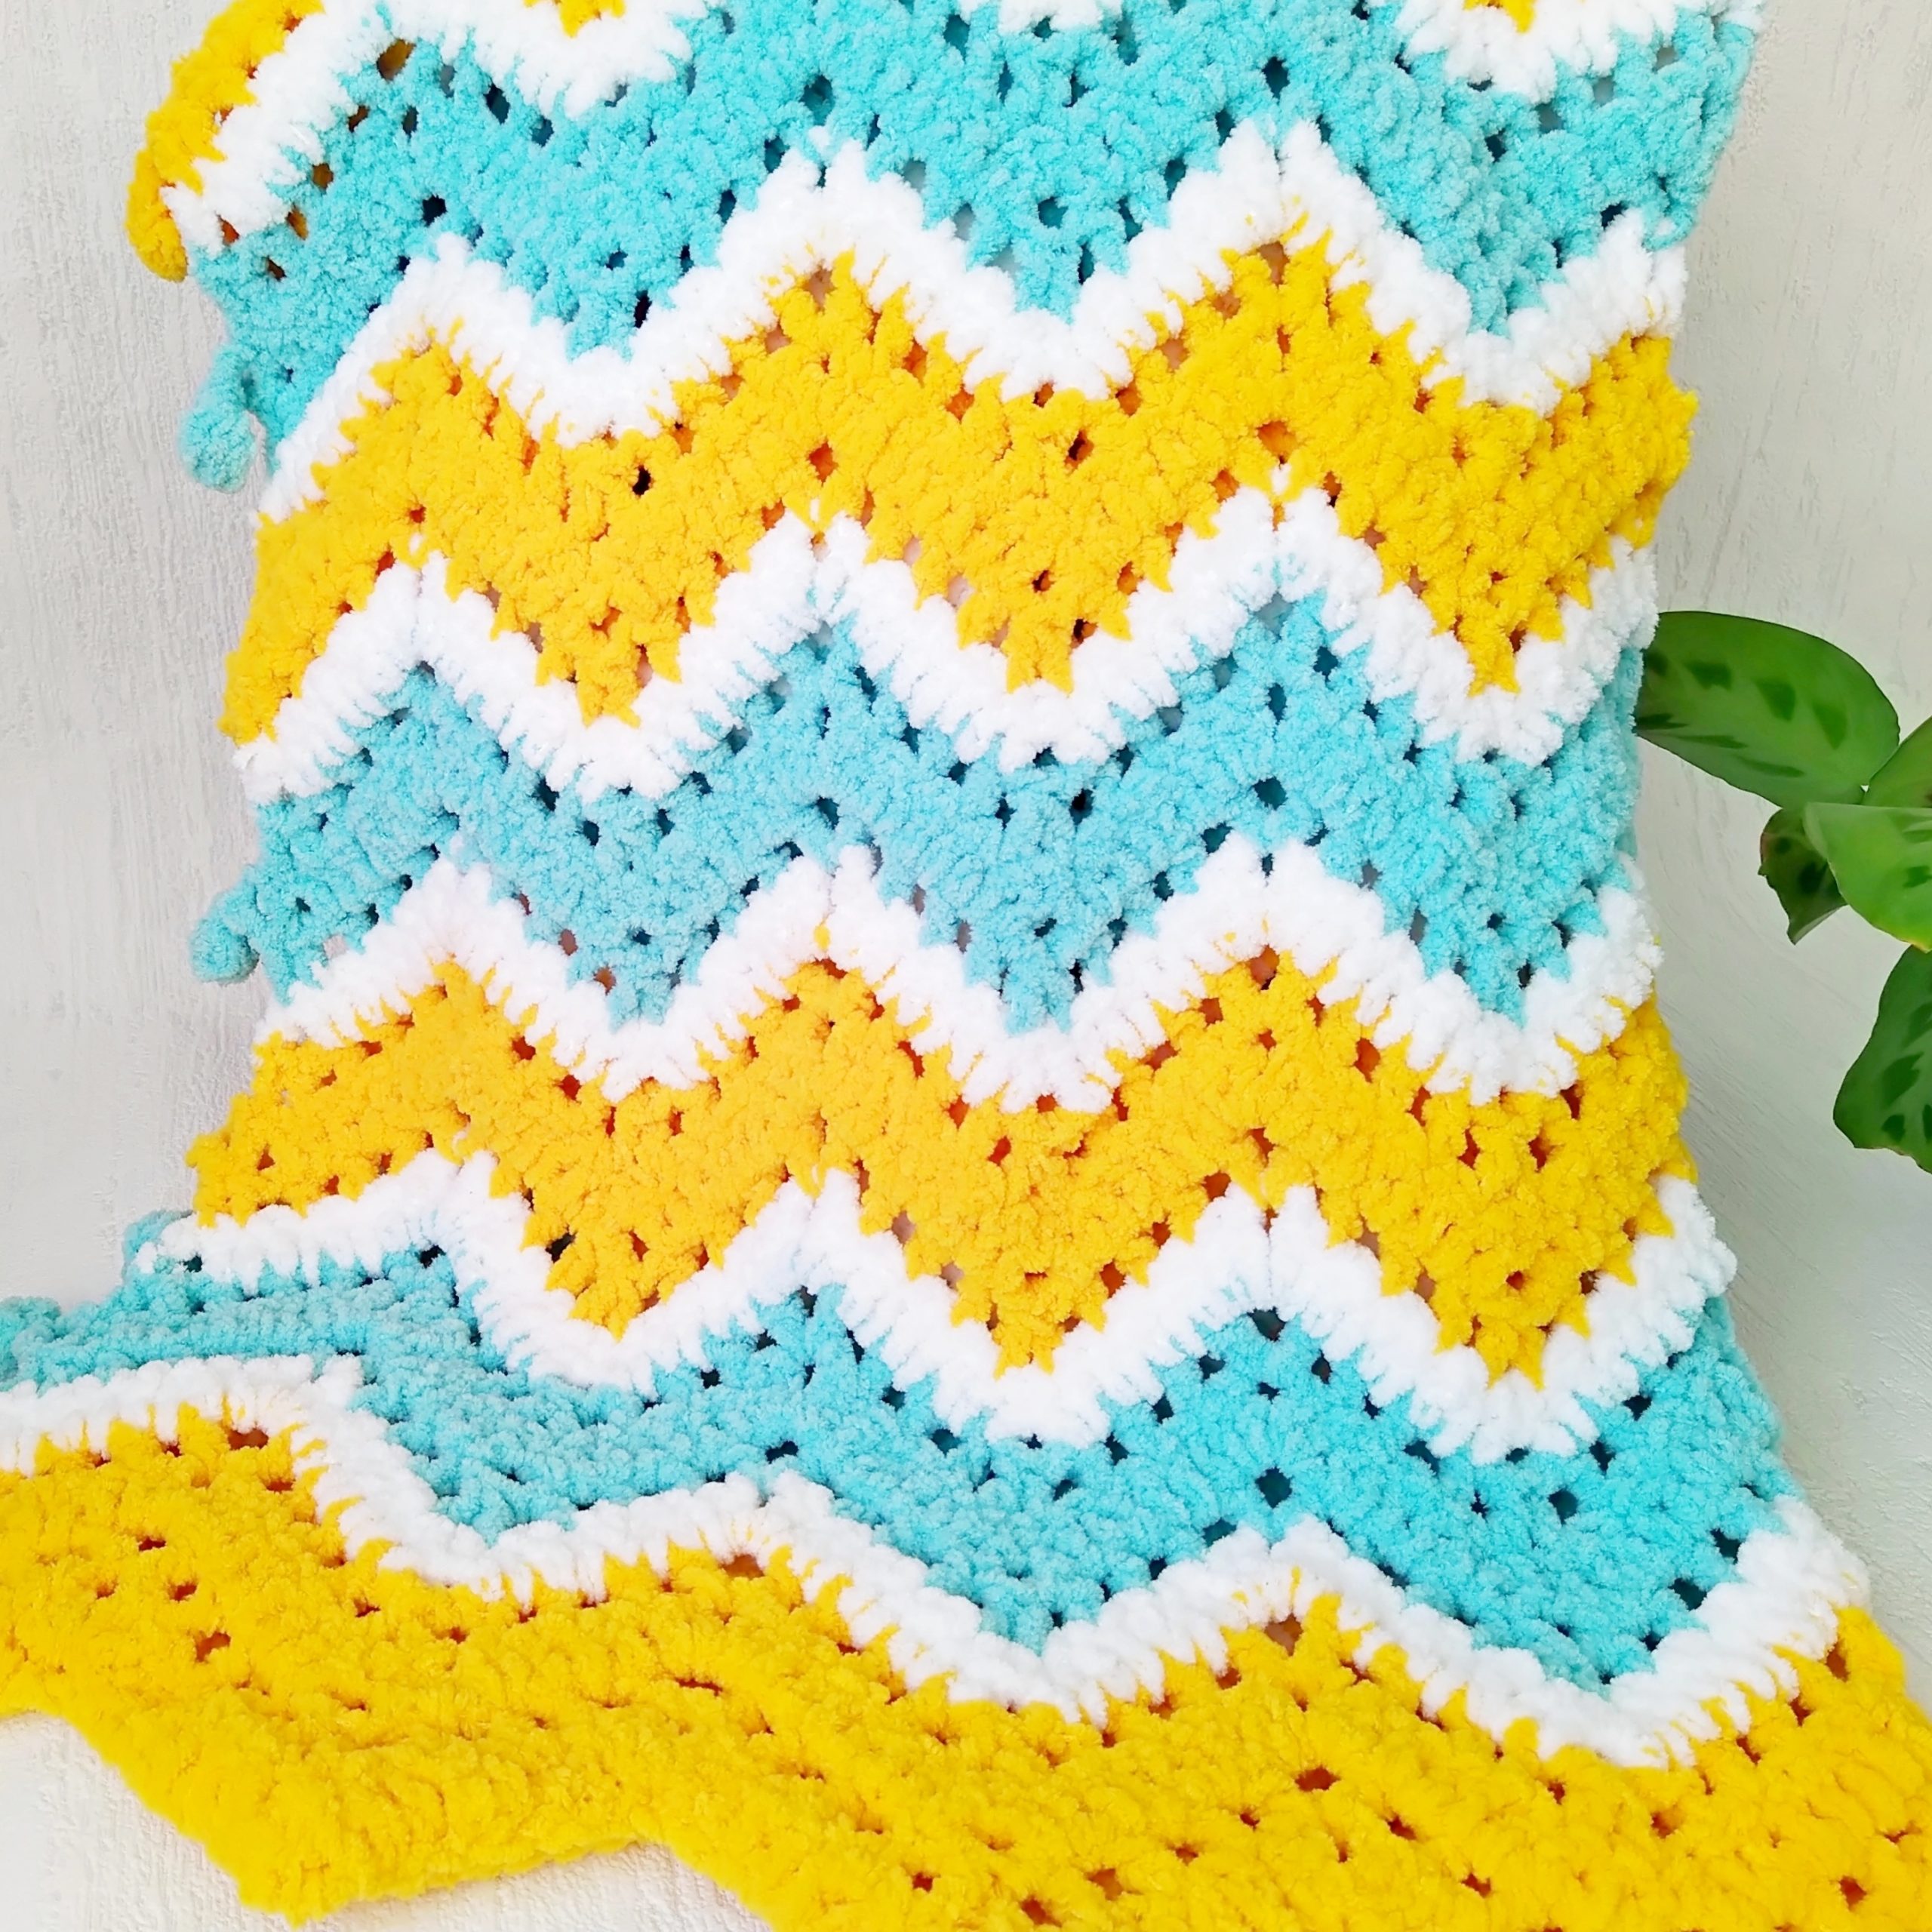 Blanket knitting patterns for bulky yarn - beginner knitting